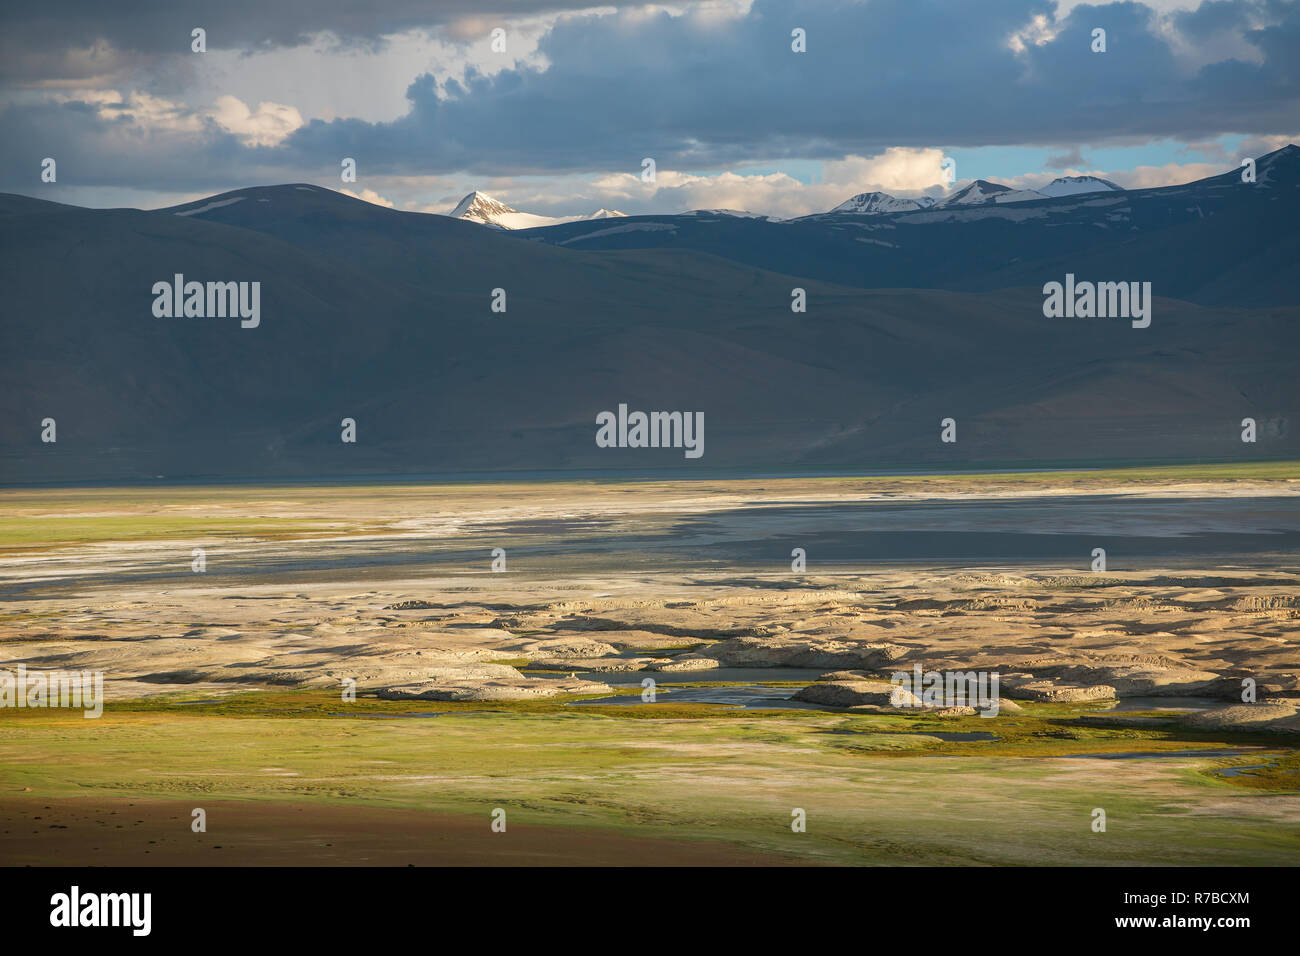 Lo splendido paesaggio di Tso Kar lago nella regione del Ladakh, India Foto Stock